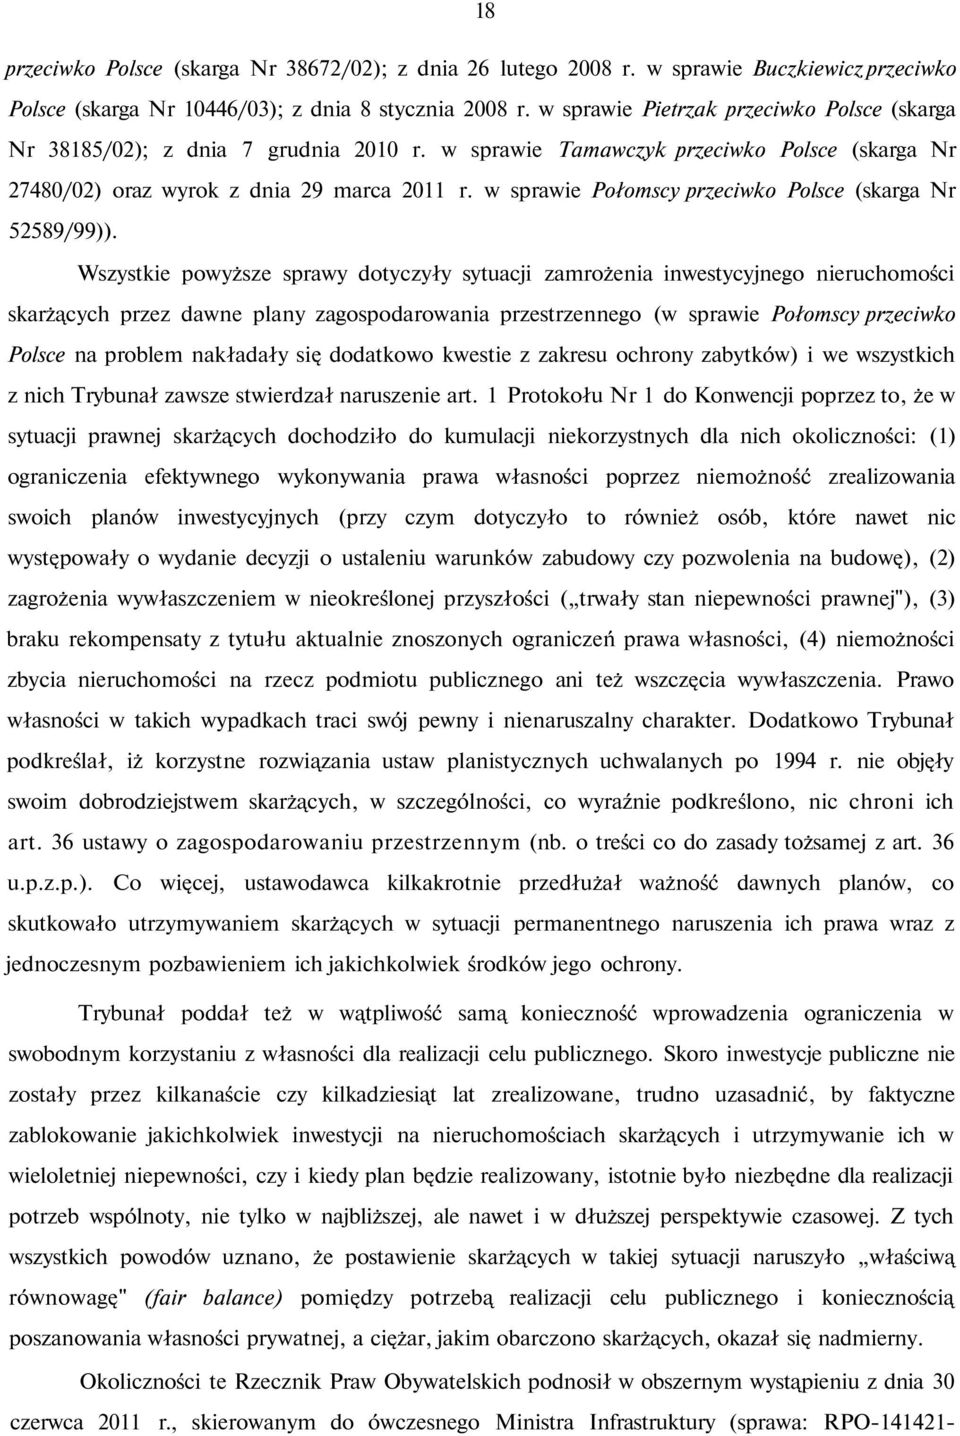 w sprawie Połomscy przeciwko Polsce (skarga Nr 52589/99)).